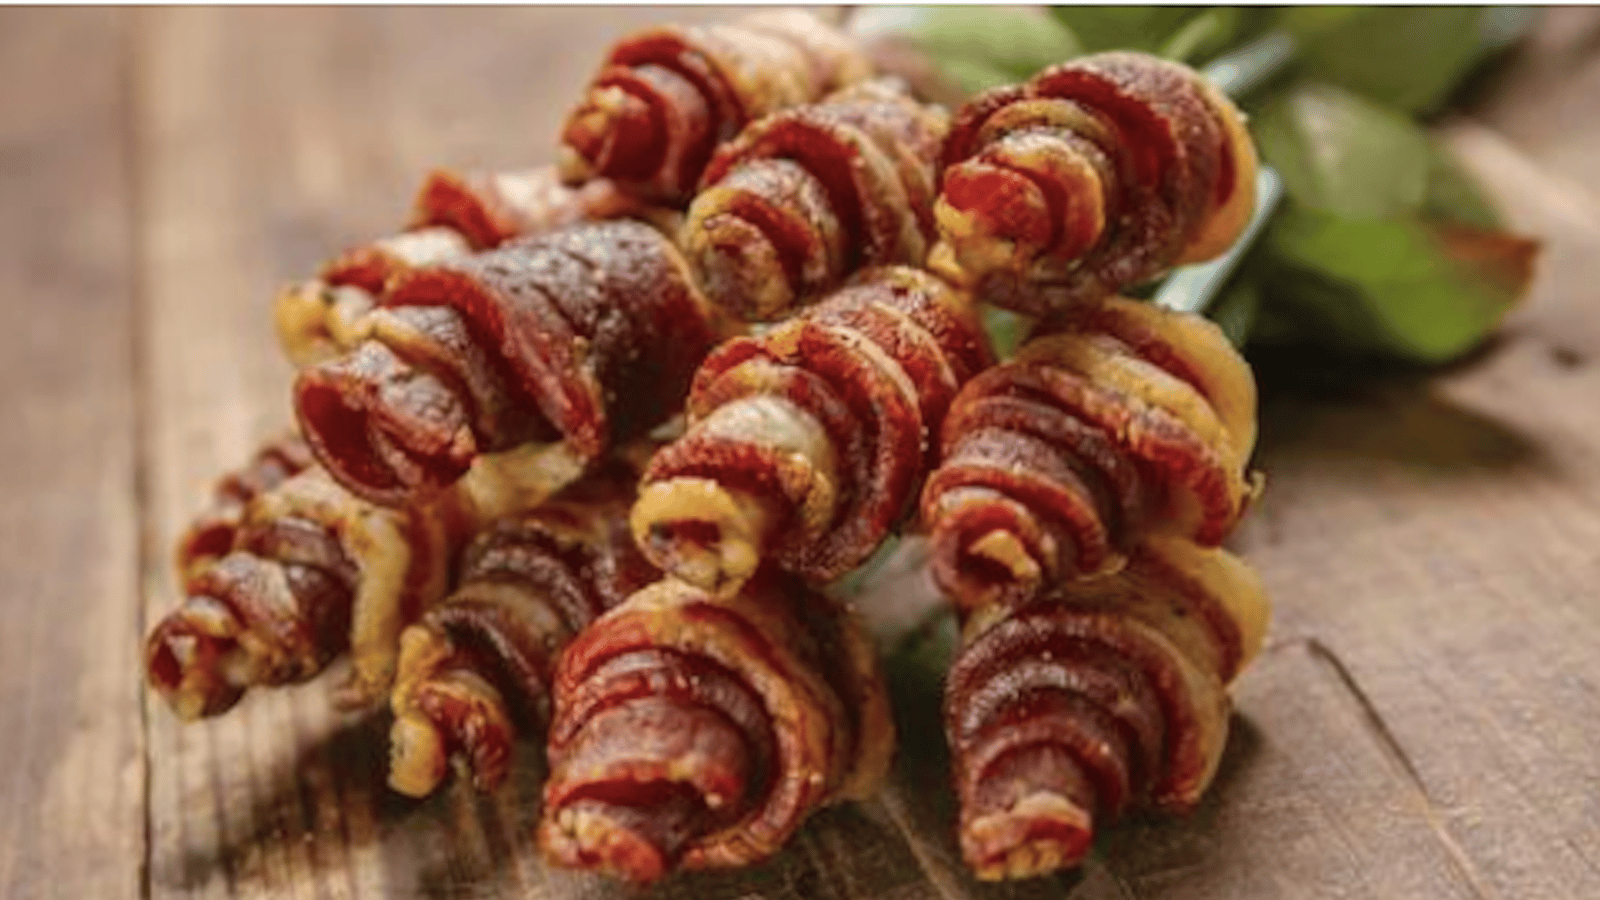 Une surprise comestible originale pour la Saint-Valentin: le bouquet de bacon!